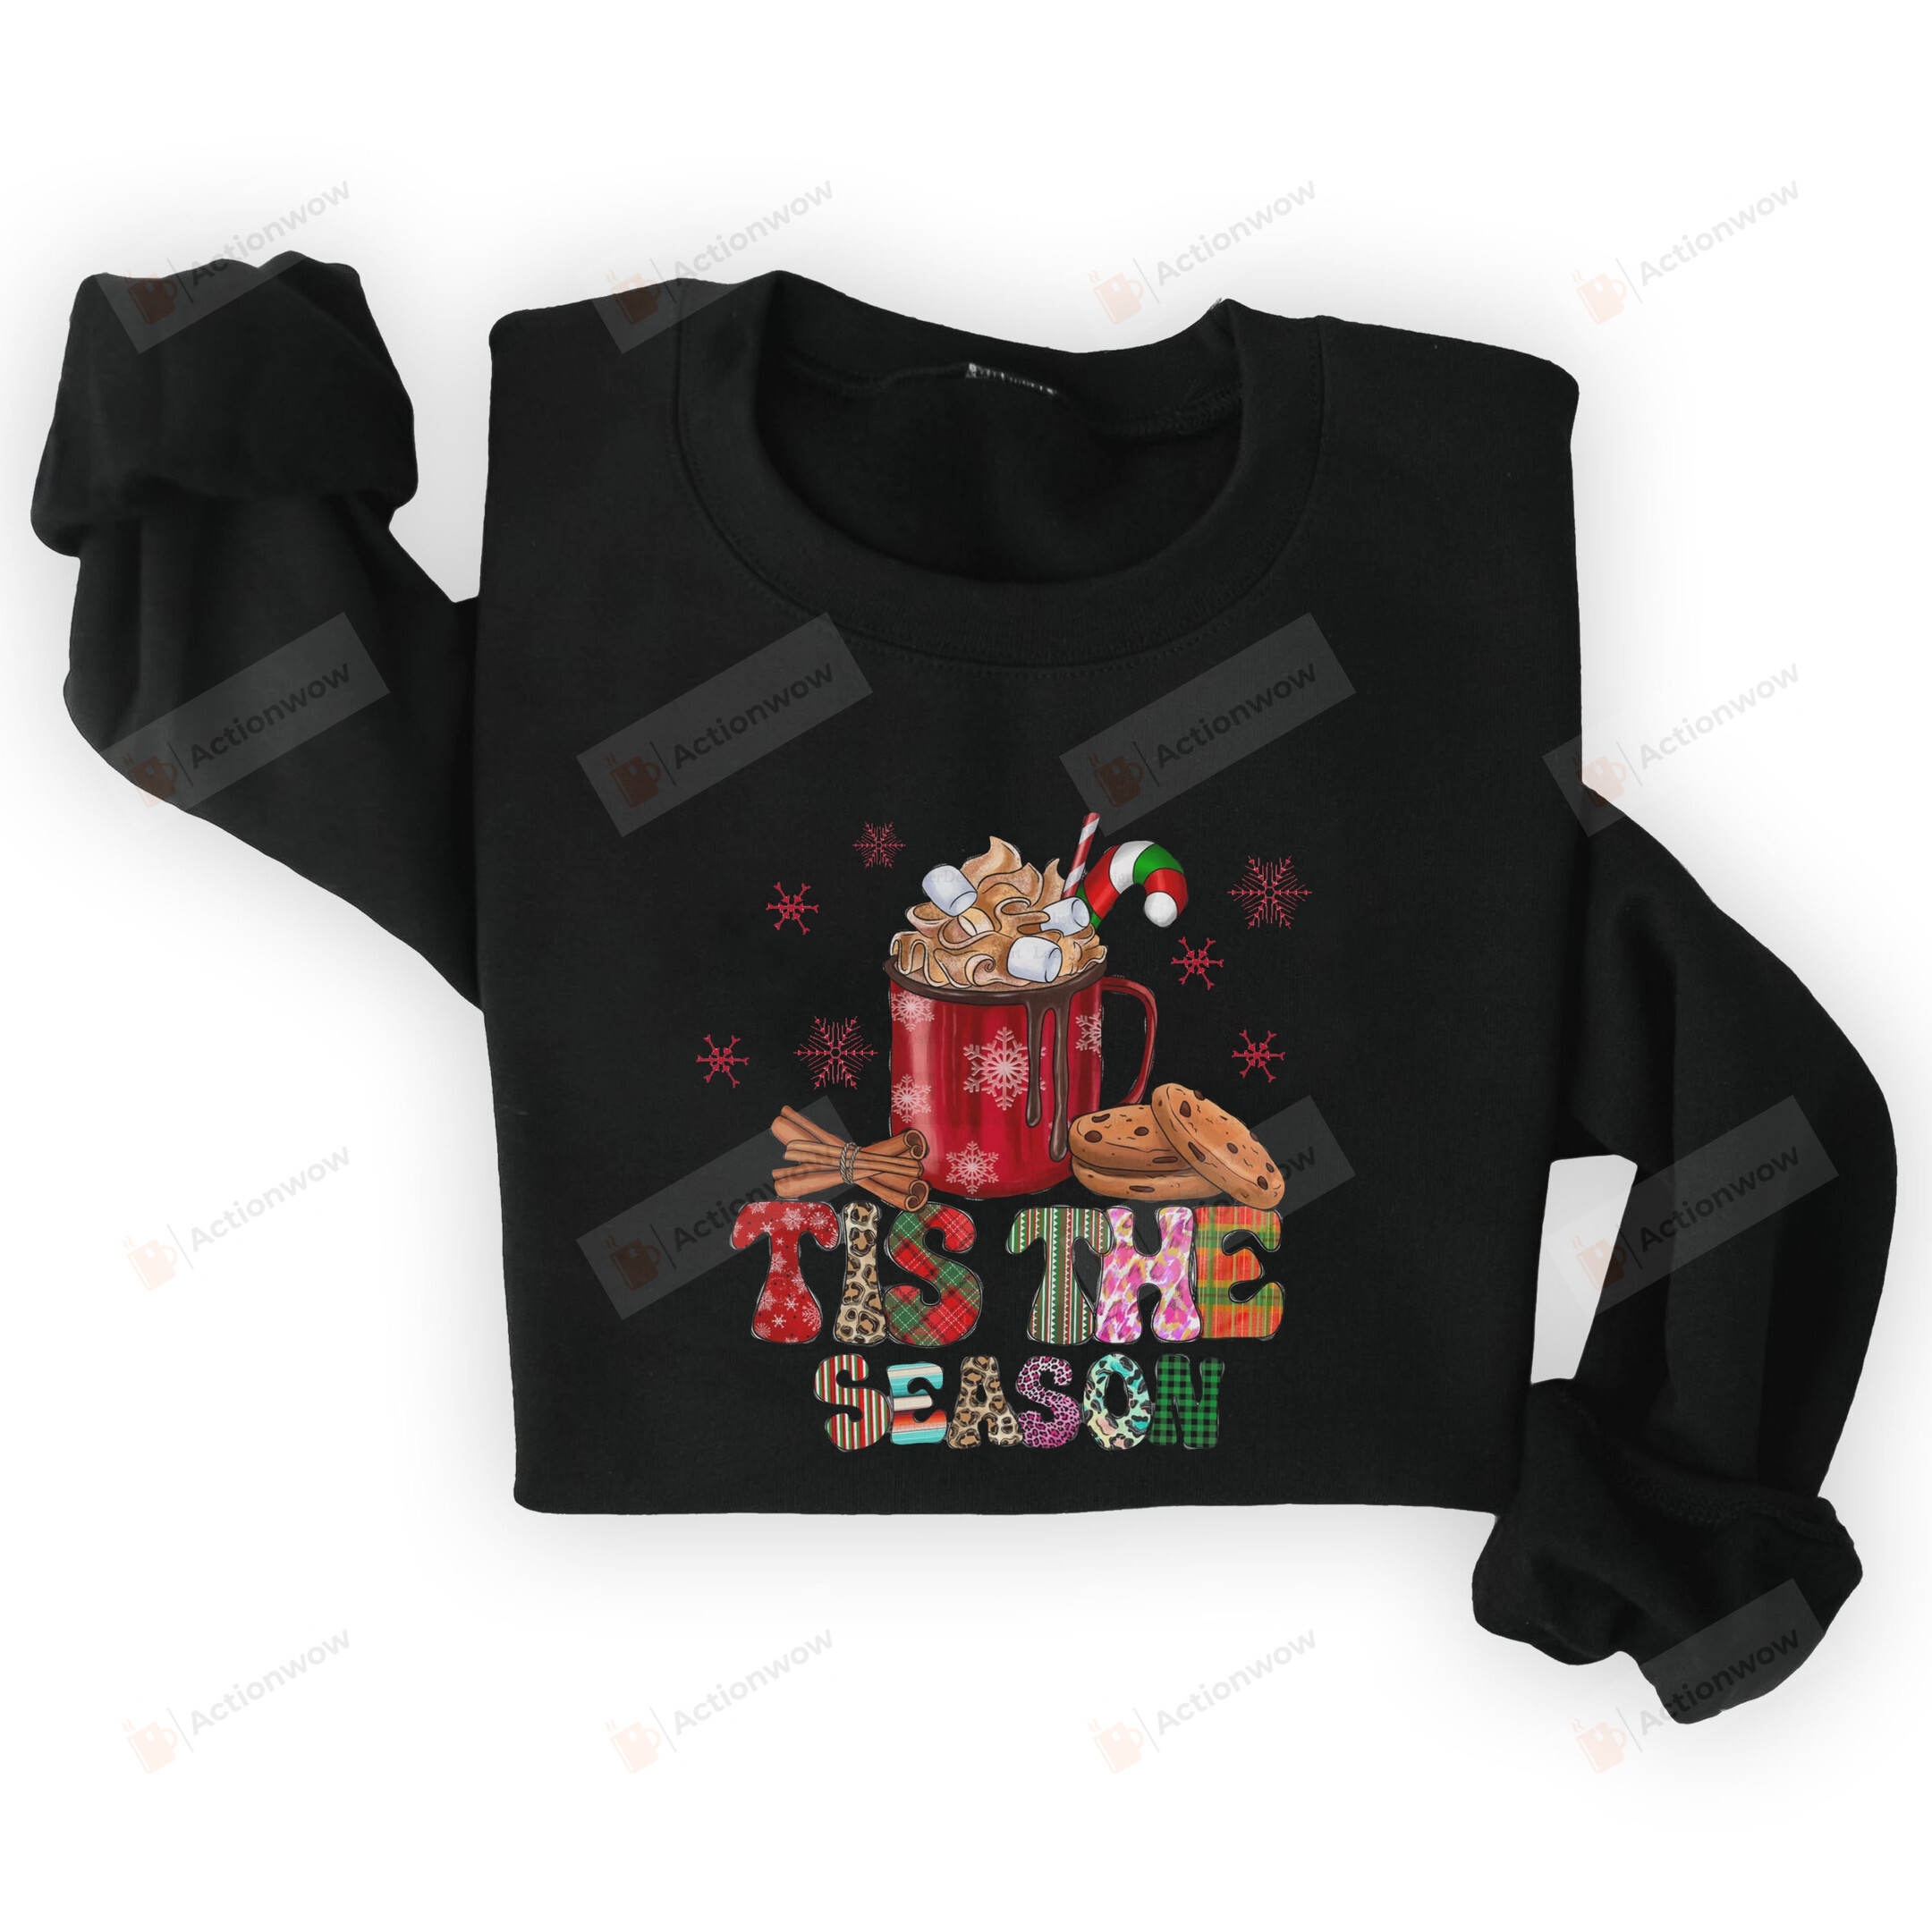 Christmas Tis The Season Sweatshirt, Hot Cocoa Sweatshirt, Christmas Sweatshirt For Women